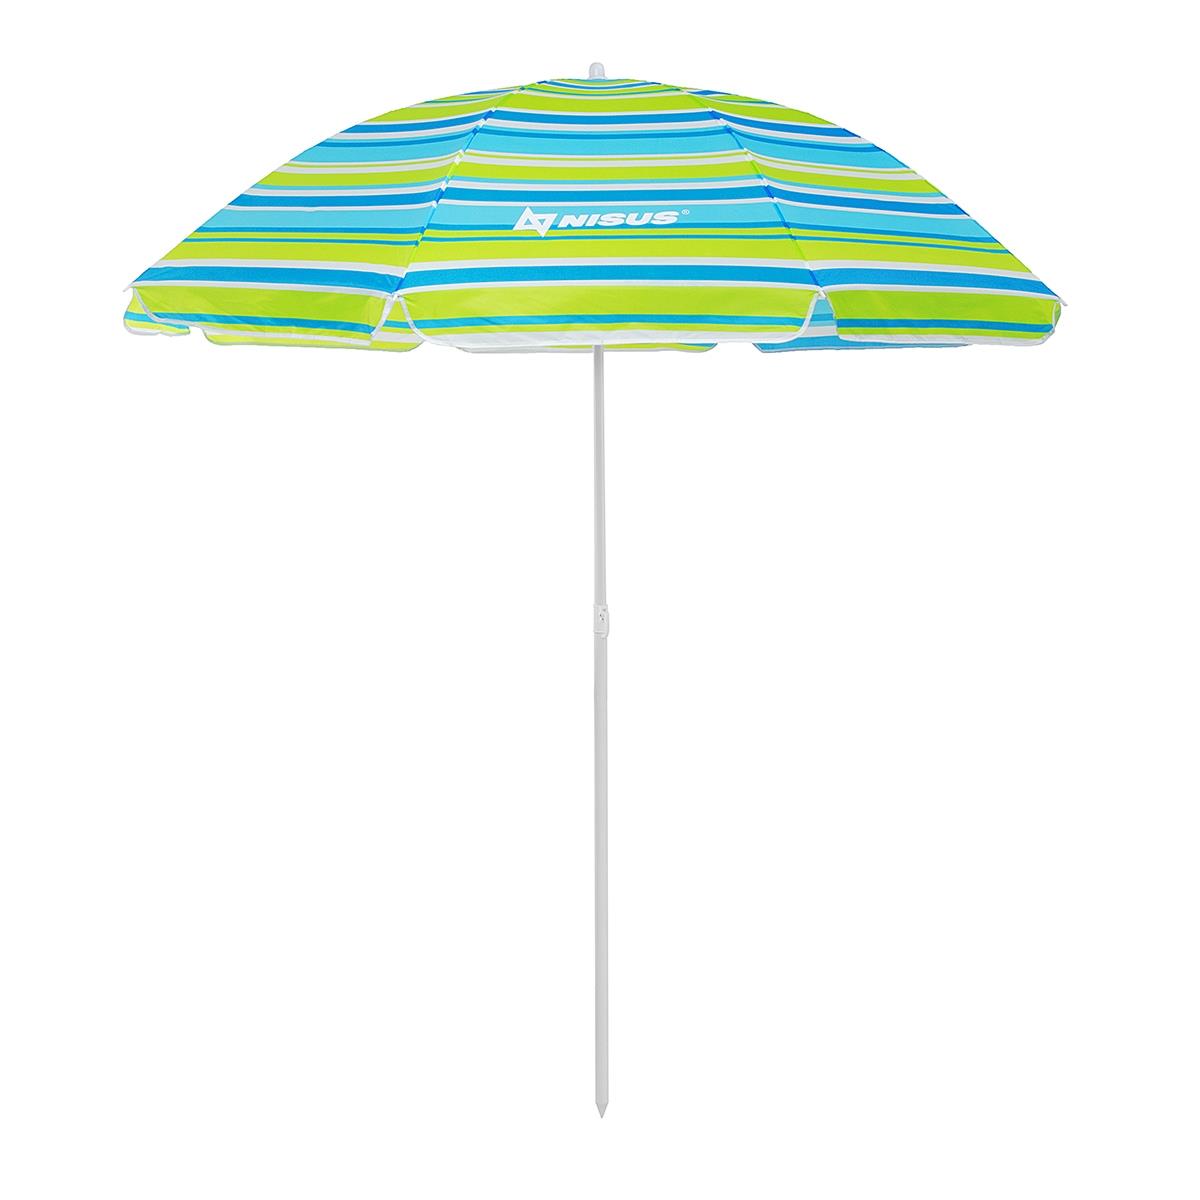 Зонт пляжный d 2,00м  с наклоном (22/25/170Т) NA-200N-SB Nisus зонт пляжный d 2 00м с наклоном 28 32 210d na 200n g nisus